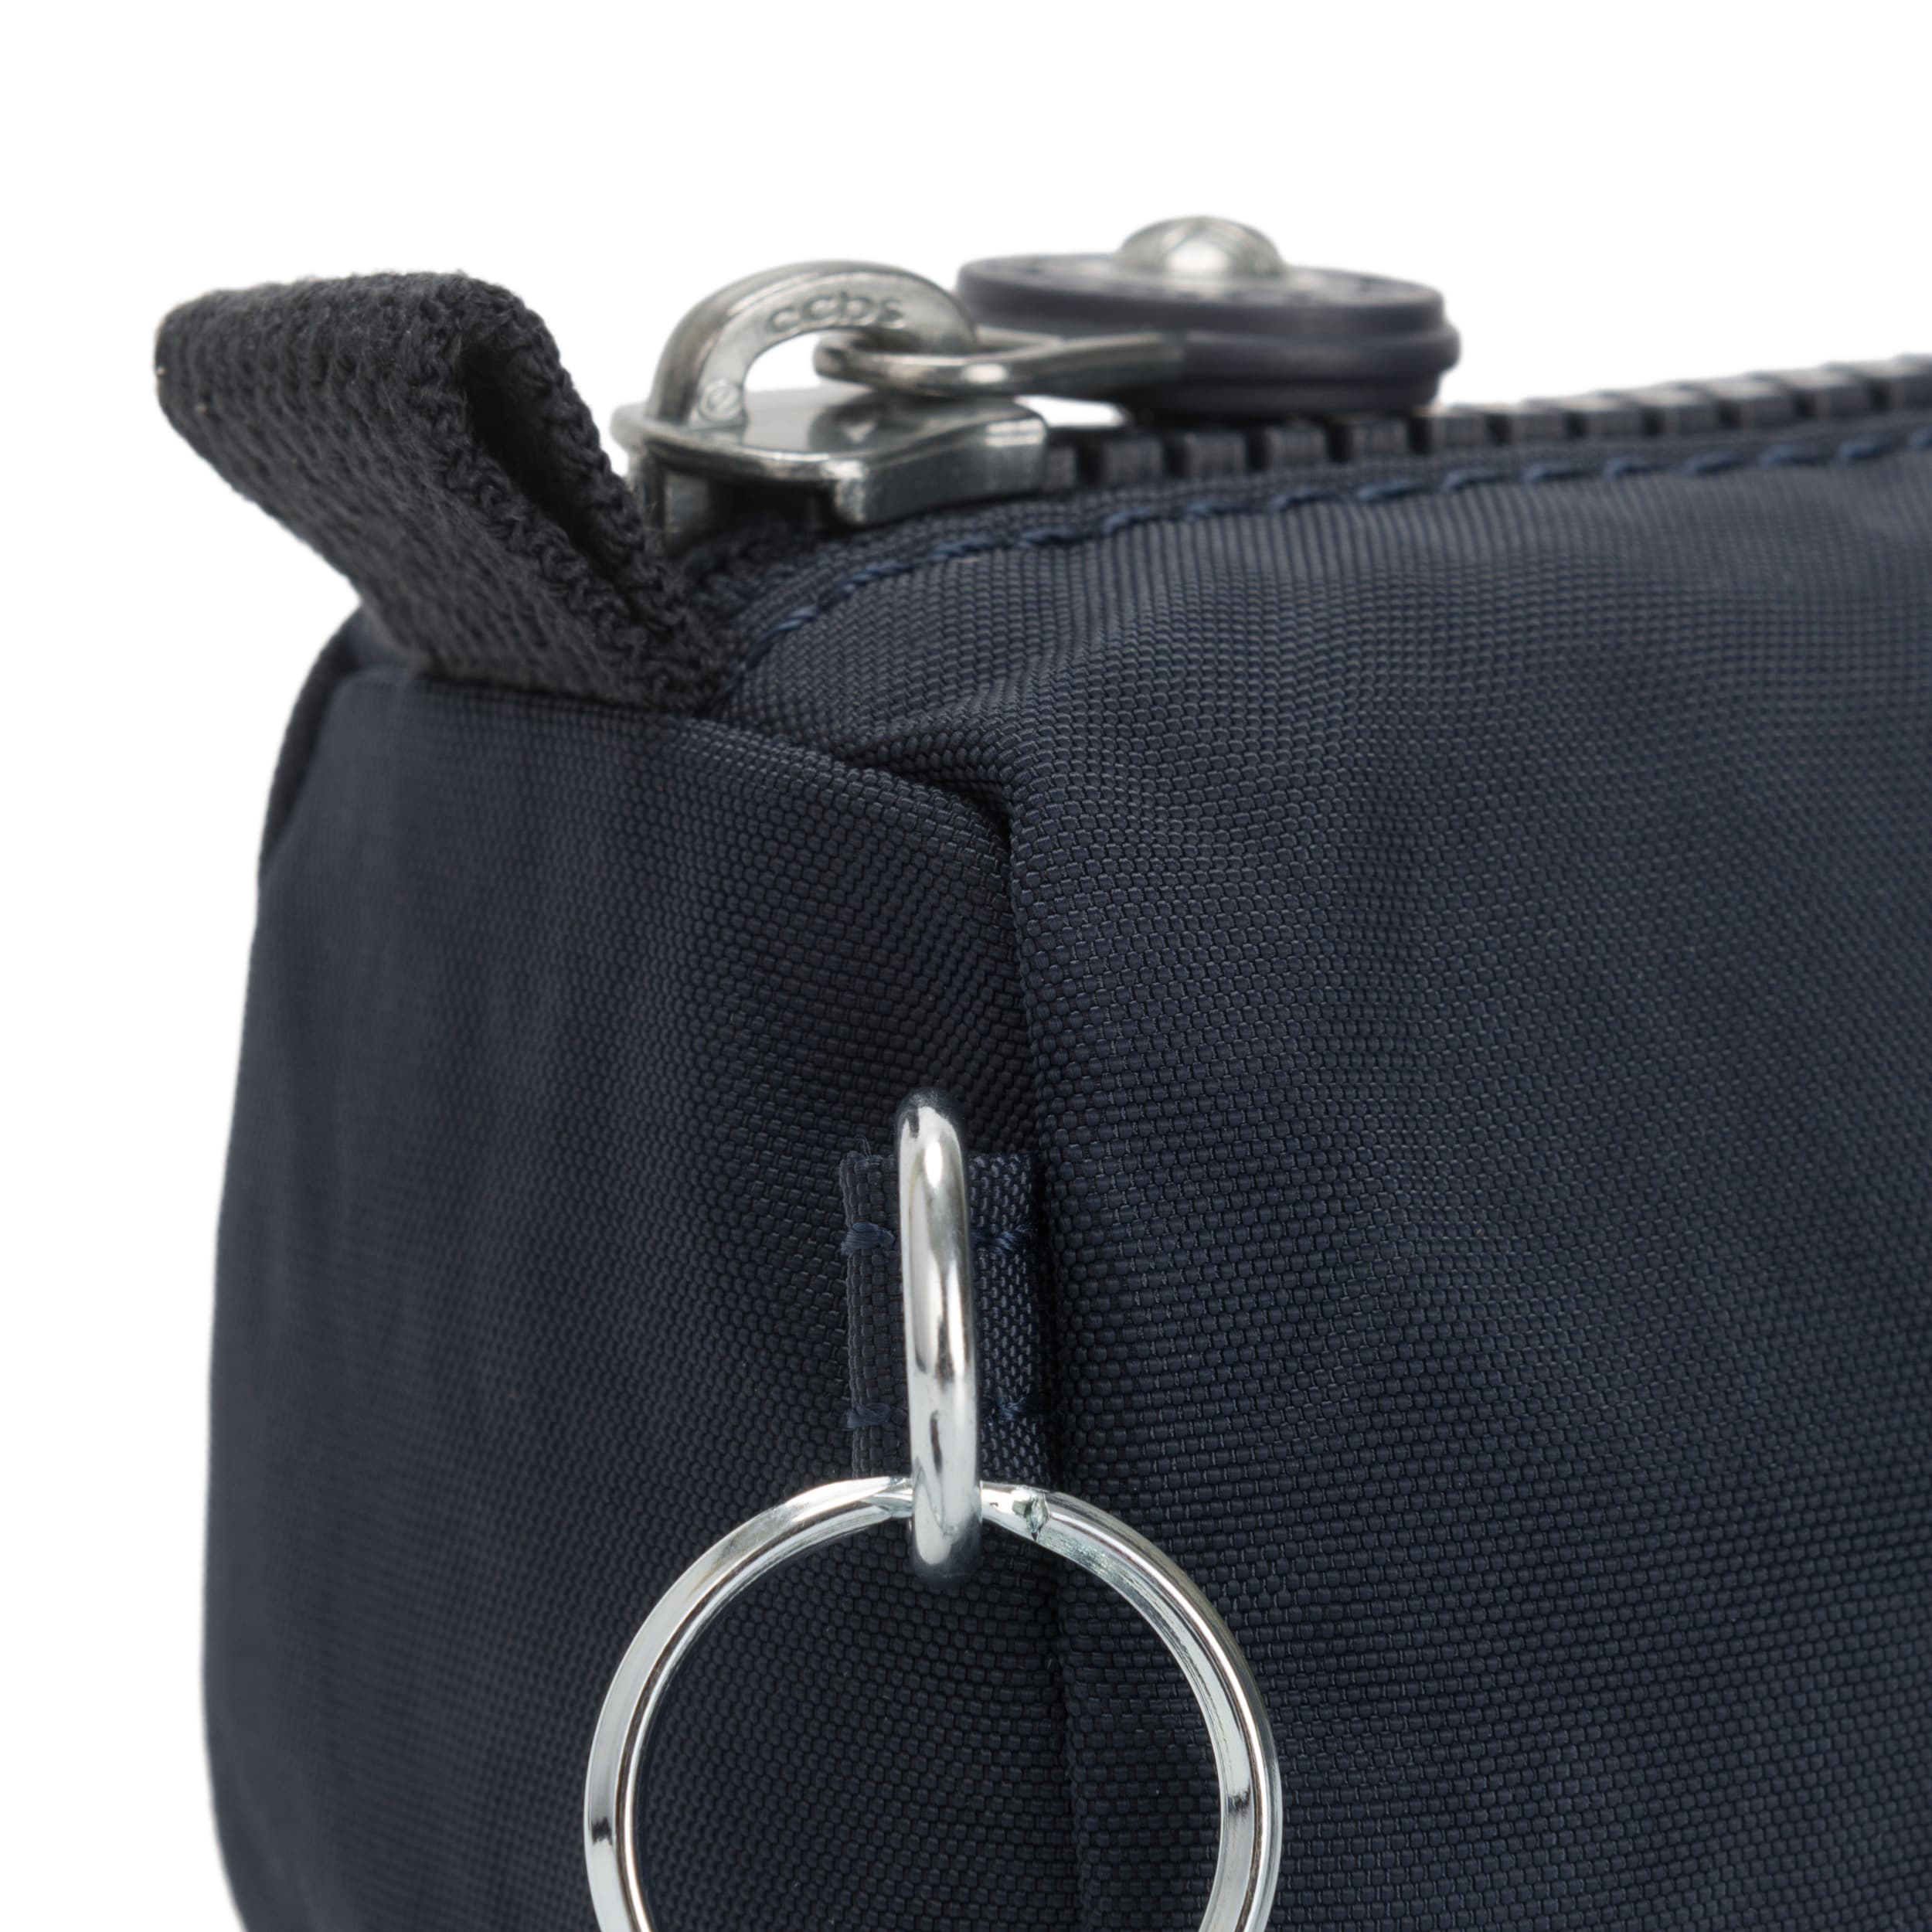 Kipling-Freedom-Medium pen case -True Blue Tonal-01373-4DX